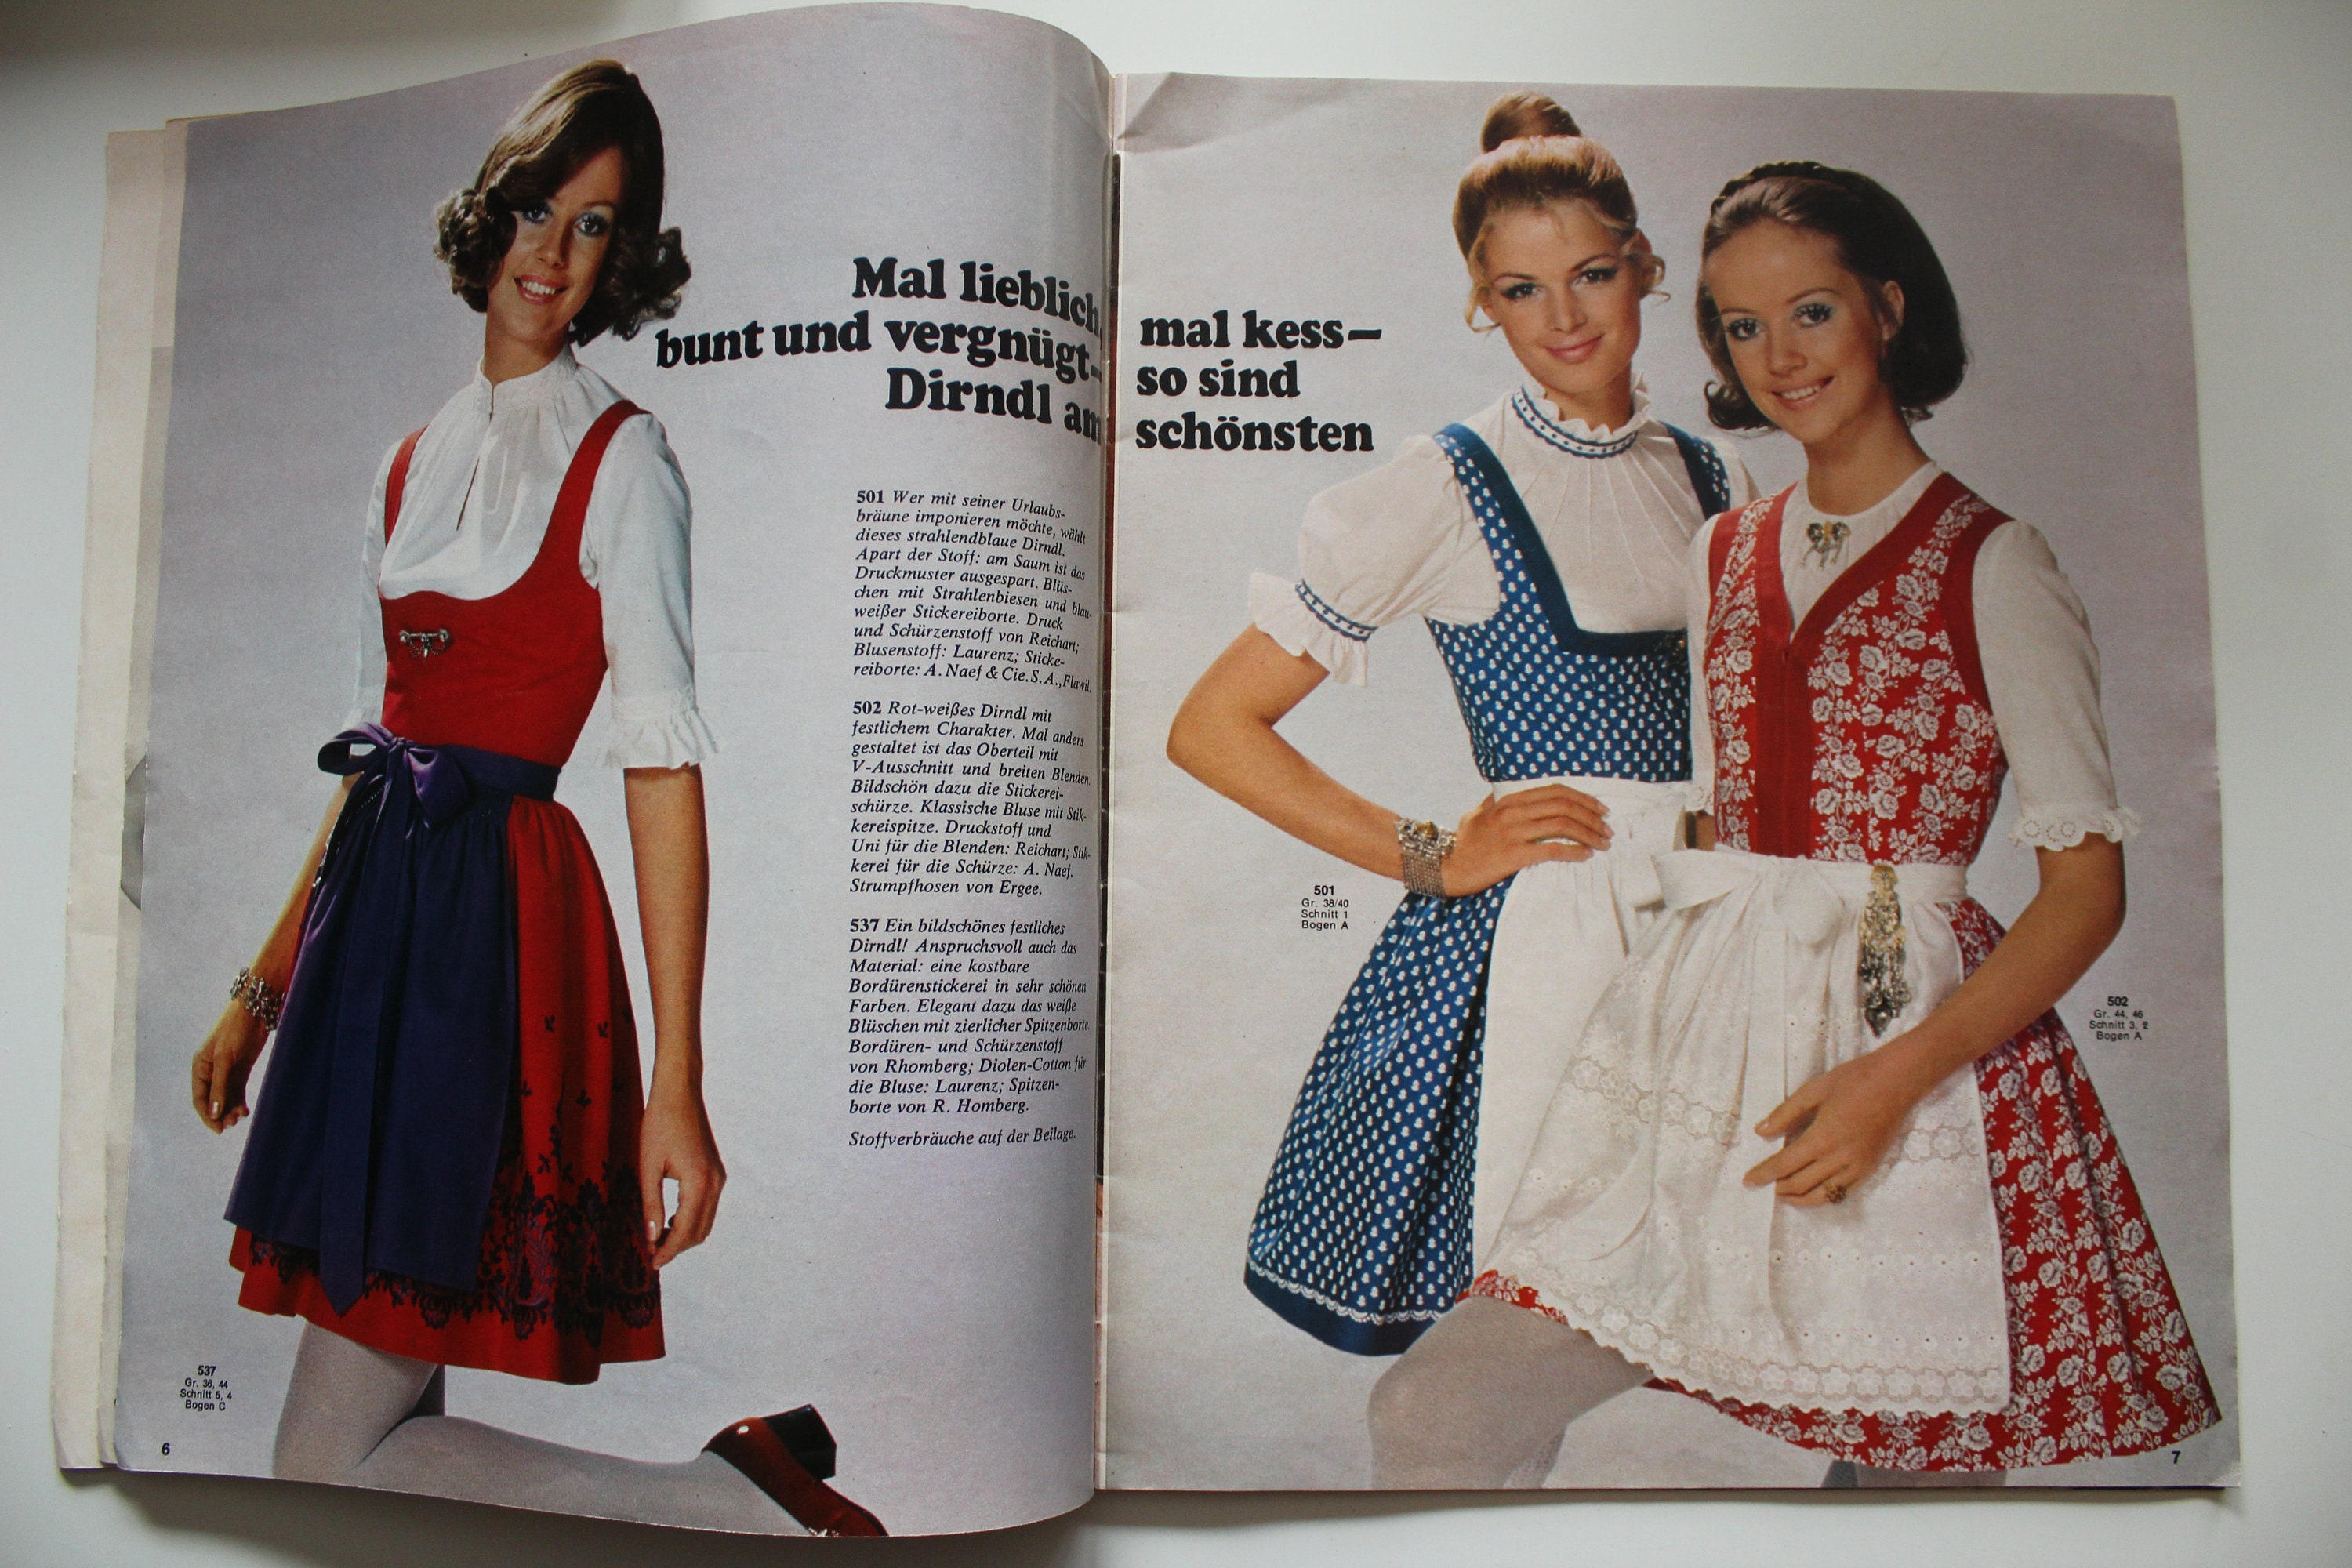 Burda Fashion in Traditional Style 1970 Instructions Cutting - Etsy